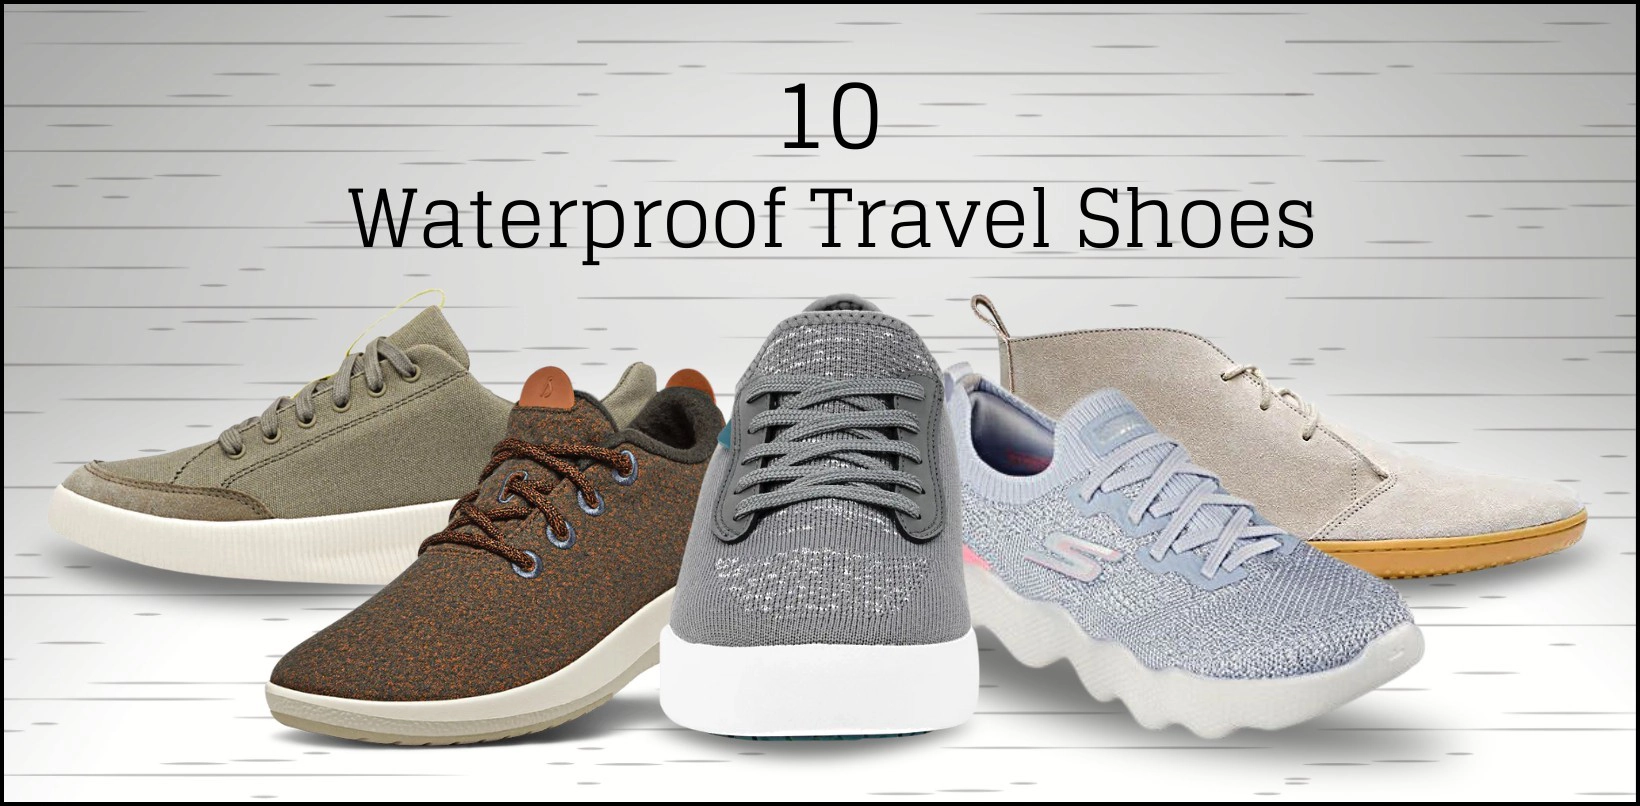 Waterproof Travel Shoes